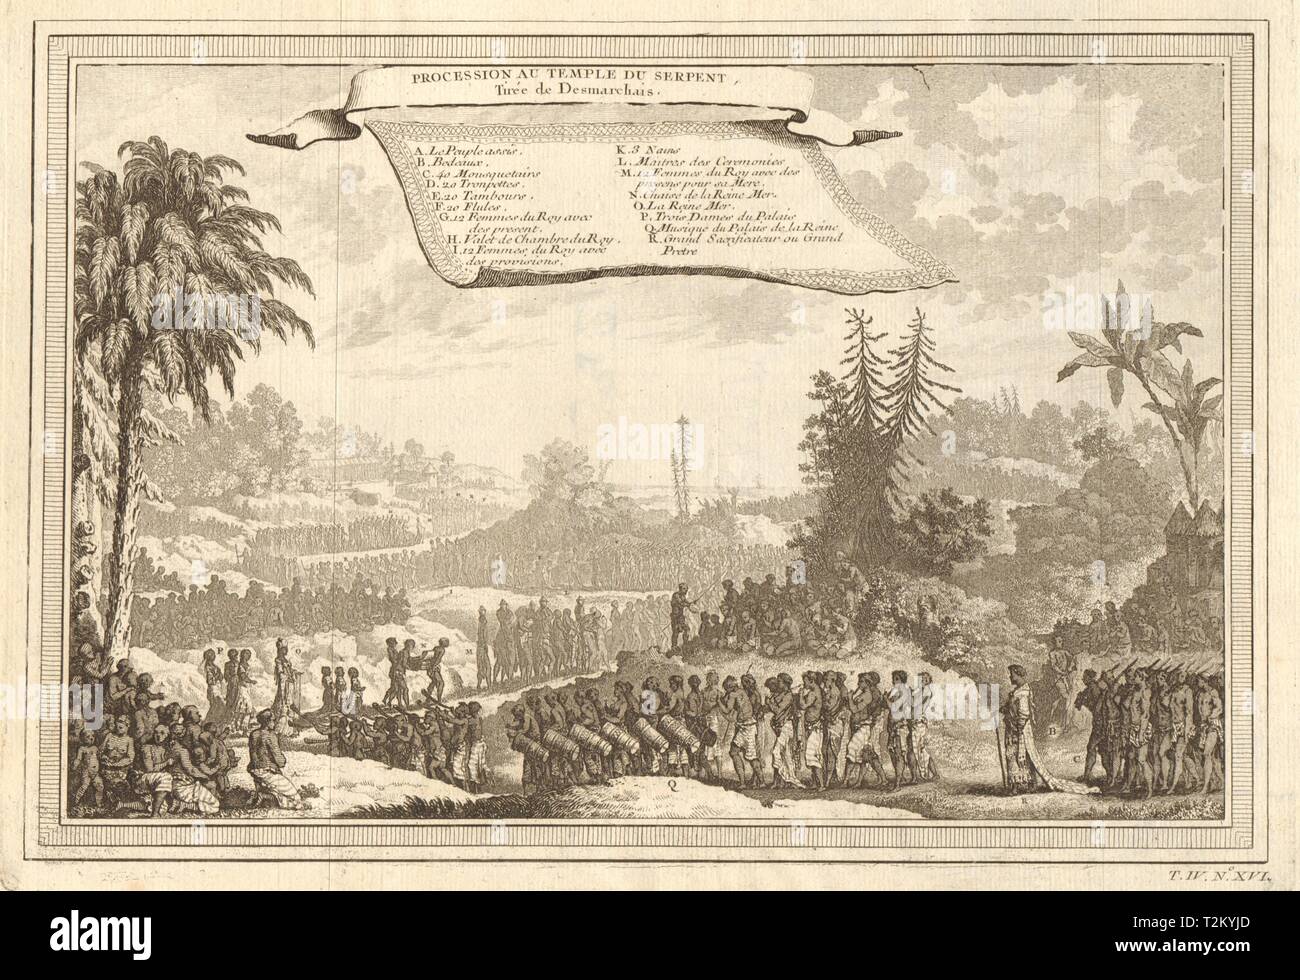 'Procesion au Temple du Serpent". Ouidah Whydah Serpiente culto. Desmarchais 1747 Foto de stock